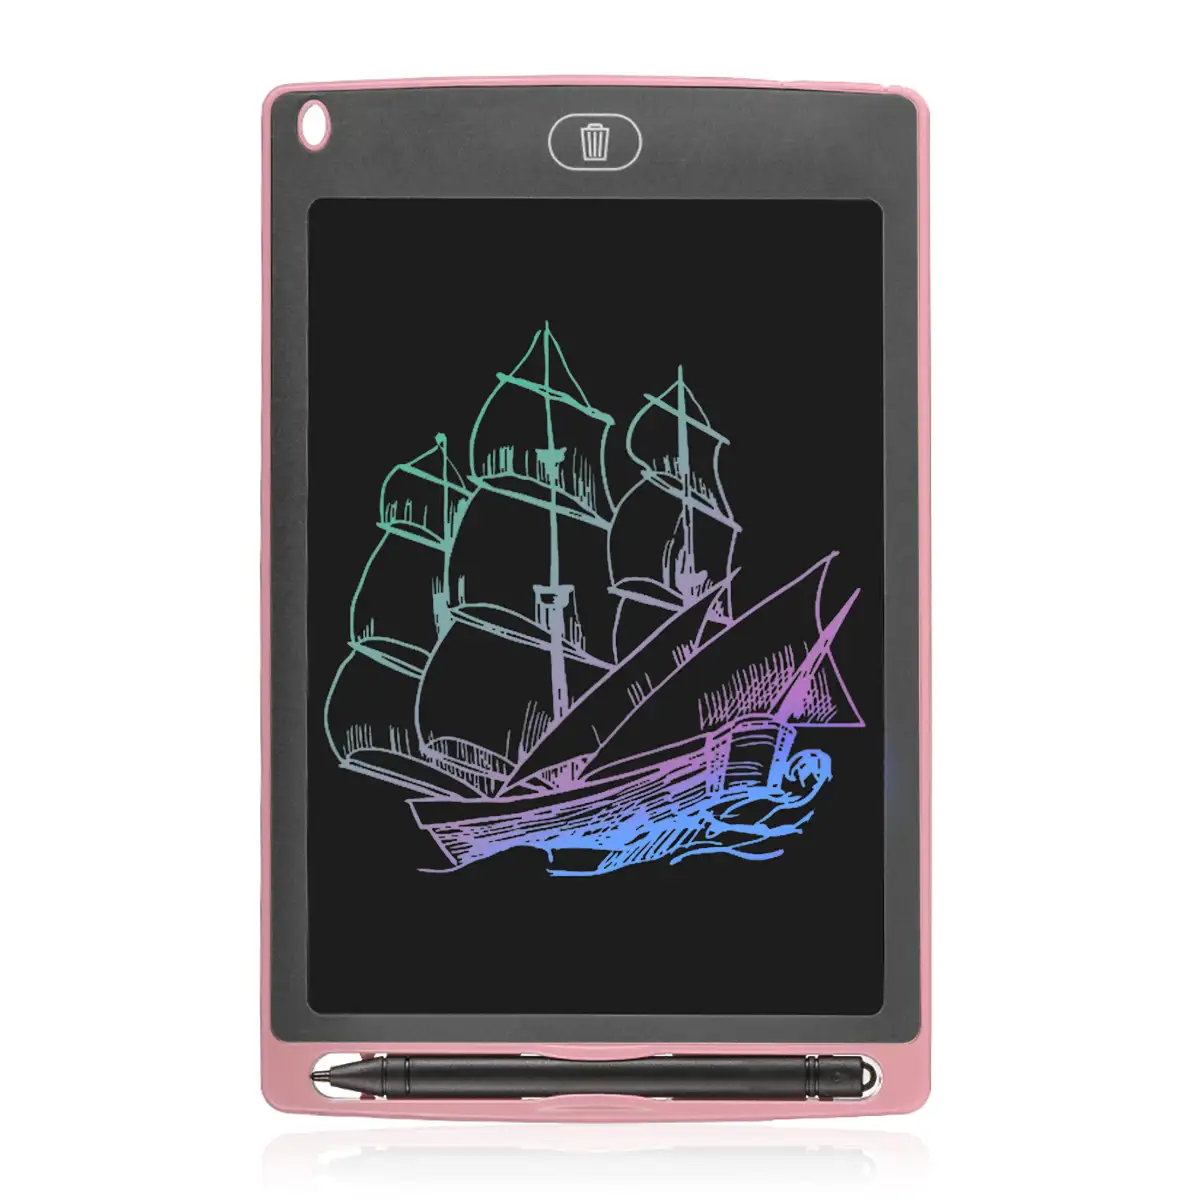 Tableta LCD portátil de dibujo y escritura de 8,5 pulgadas, con imanes de sujeción. Fondo multicolor.